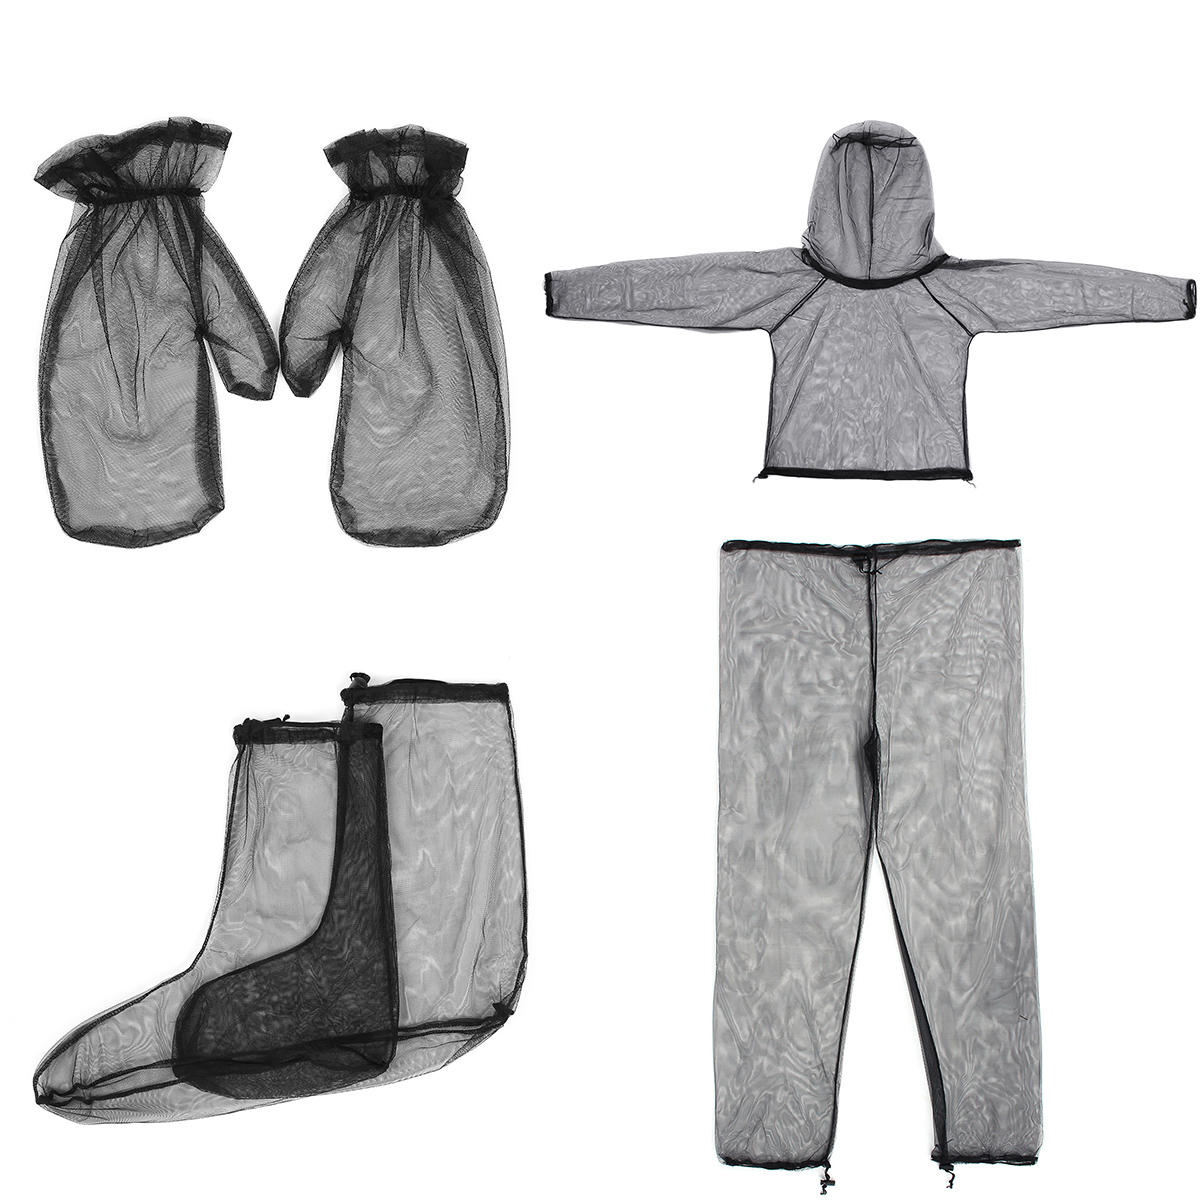 Lichte reis- en kampeerkleding voor buitenactiviteiten van hoogwaardig mesh materiaal, bestaande uit jas, broek, handschoenen en sokken die bescherming bieden tegen muggen.